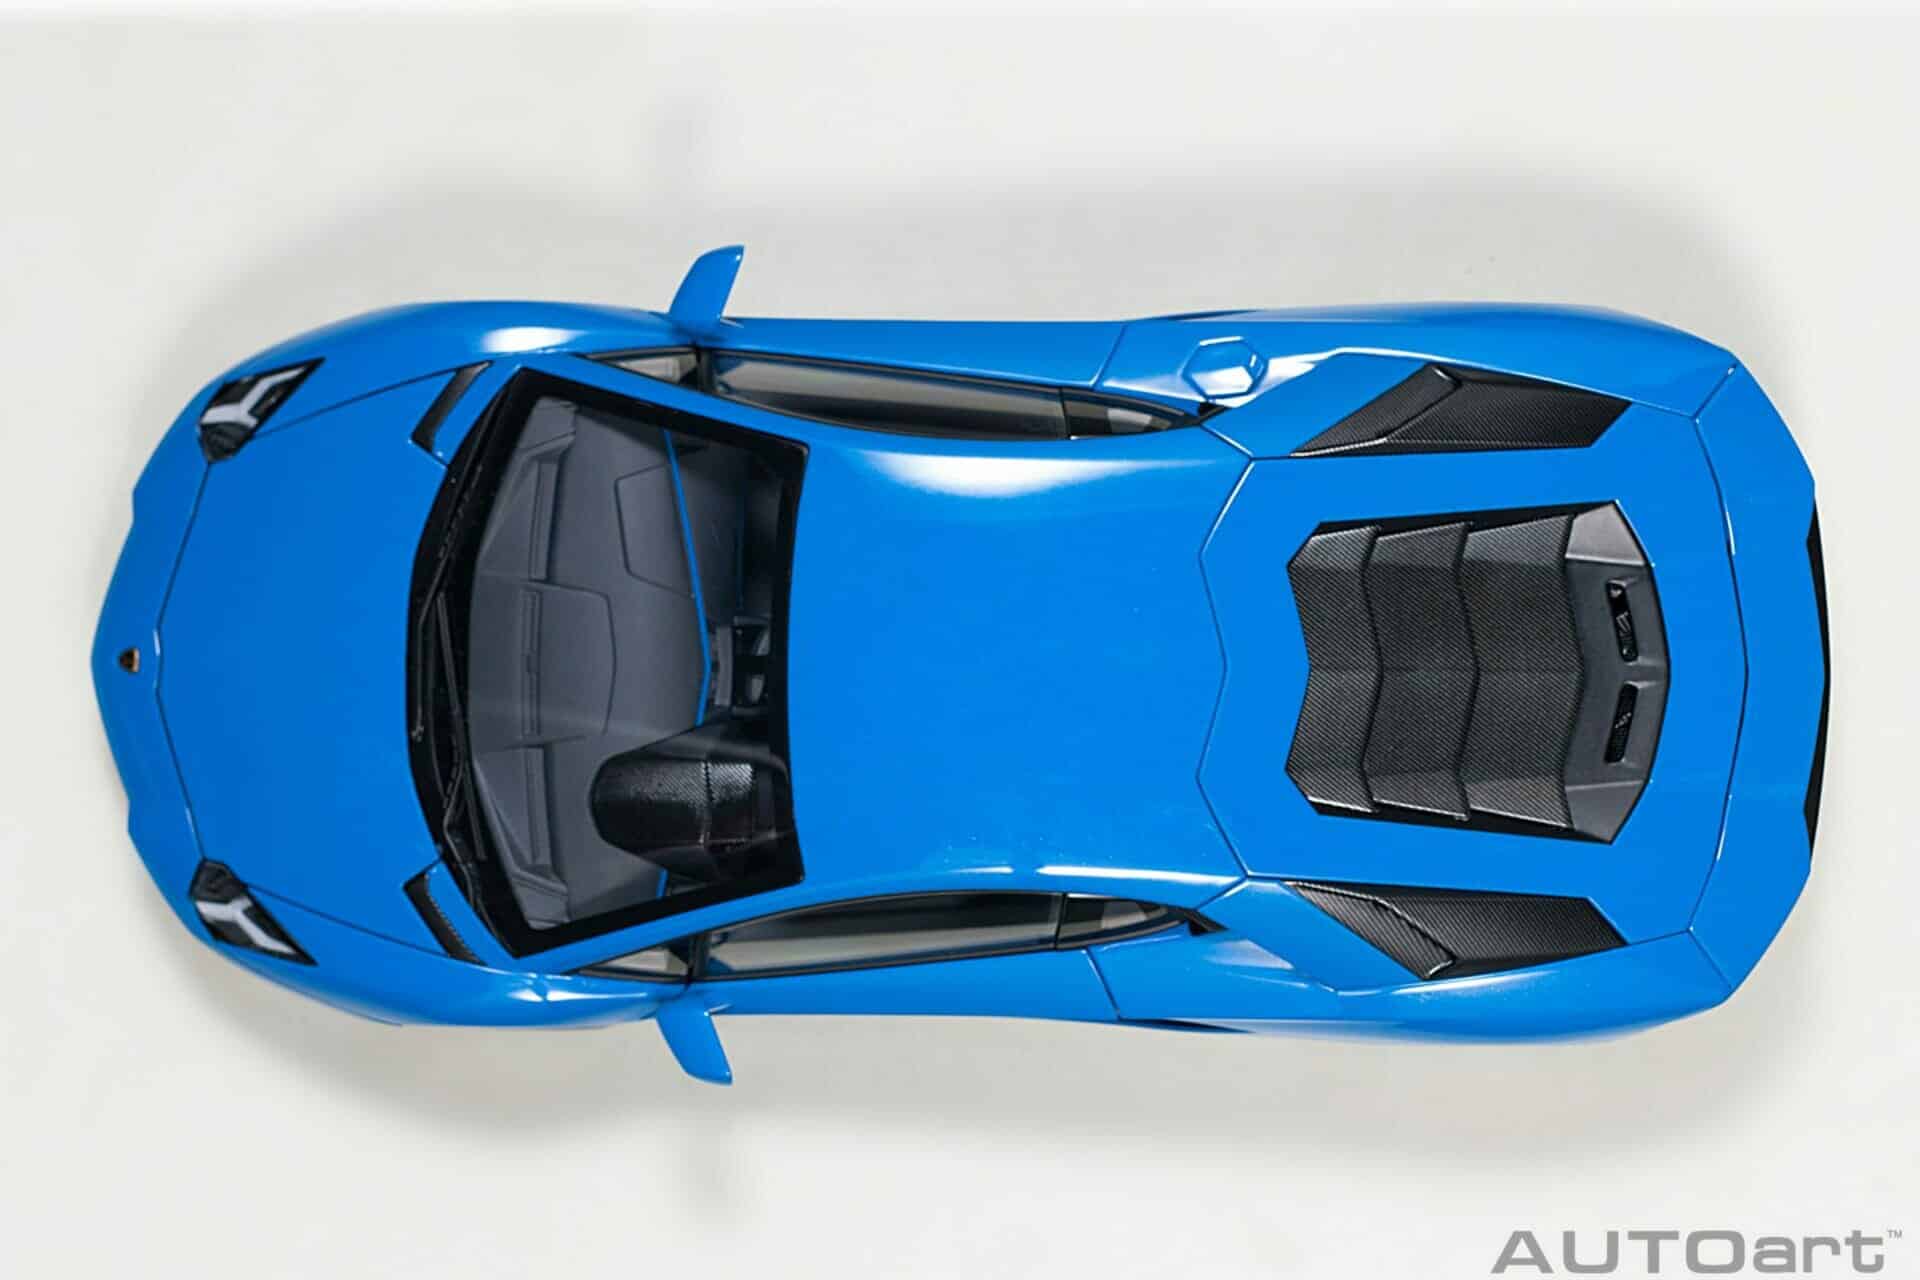 autoart - 1:18 lamborghini aventador s (blue nila)